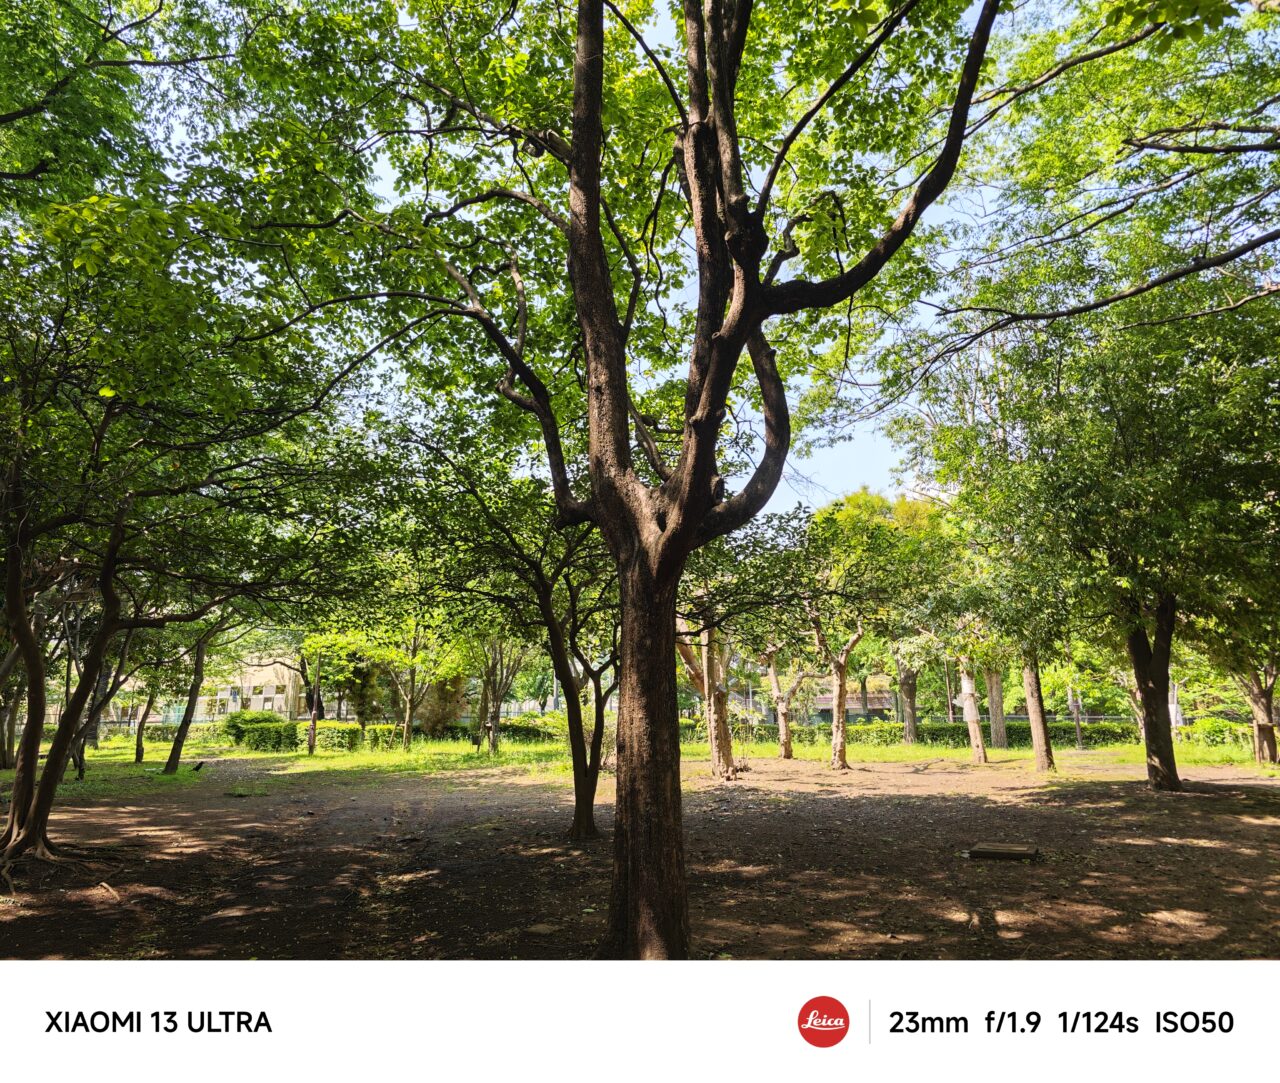 Xiaomi 13 Ultraで撮影した写真。「Leica Vibrant Look」（ライカバイブラントルック）モード。その3。